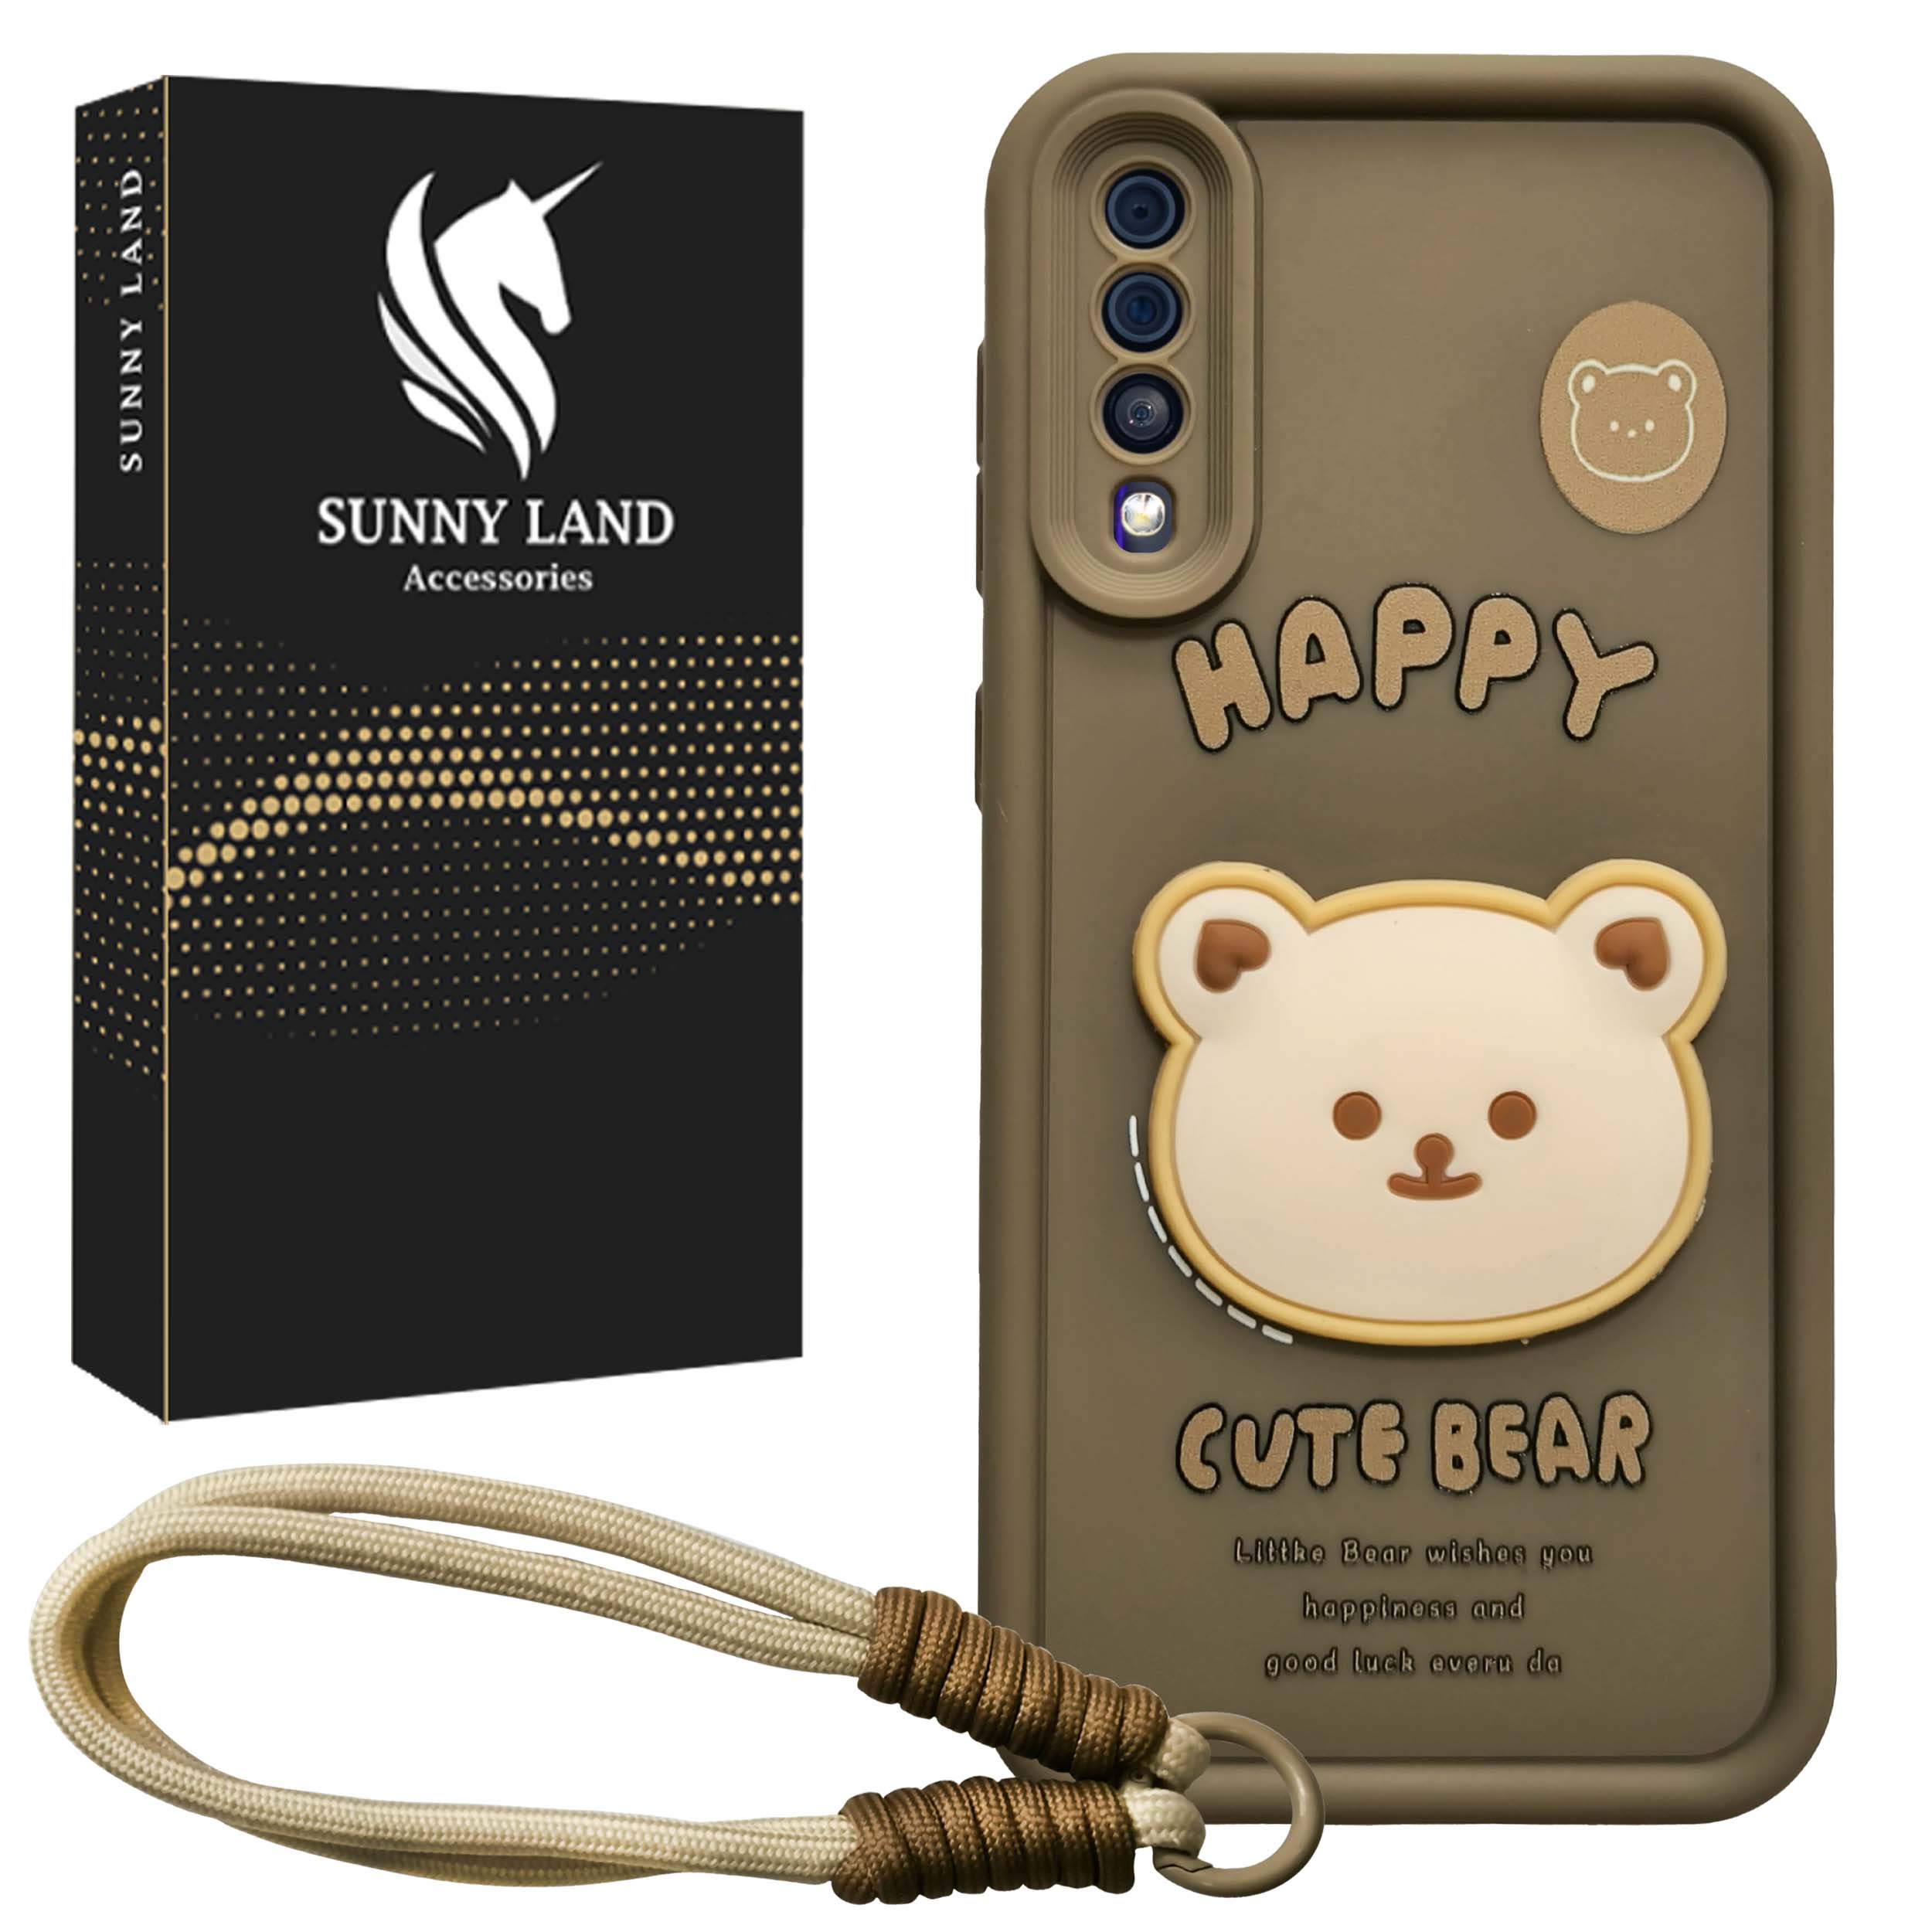 کاور سانی لند مدل Bear مناسب برای گوشی موبایل سامسونگ Galaxy A50 / A50s / A30s به همراه بند